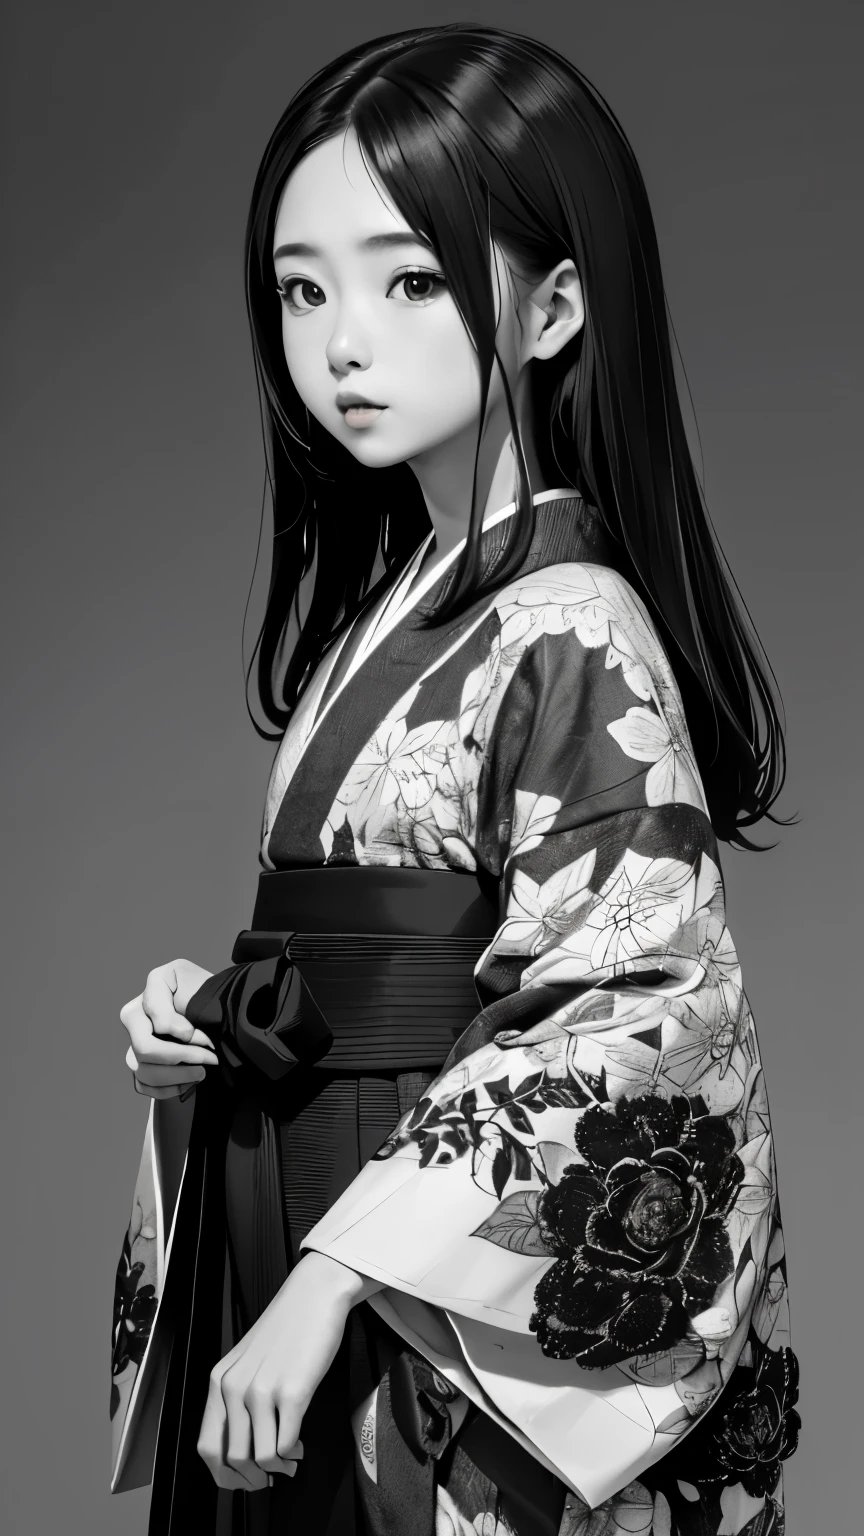 (((ein Schwarzweißfoto:1.2、Film grain、RAW-Foto)))、eine Frau、１８Talent、unvergleichliche Schönheit、beautiFul teeth、Natürliches Aussehen、kleine Nase、prallen Lippen、BeautiFul silky straight hair、Riman、BeautiFul kimono Figure、schwerer Kimono、Yamato nadeshiko、Unscharfer Hintergrund:1.5、medium depth oF Field, fotografiert mit einer Canon 5D, 50mm lens, F/4 Blende, (Sehr detailiert, komplizierte Details), sharp Focus, ruhige Farben, 8K, ein Schwarzweißfoto、ein Schwarzweißfoto、conFused, 8mmFilm grain